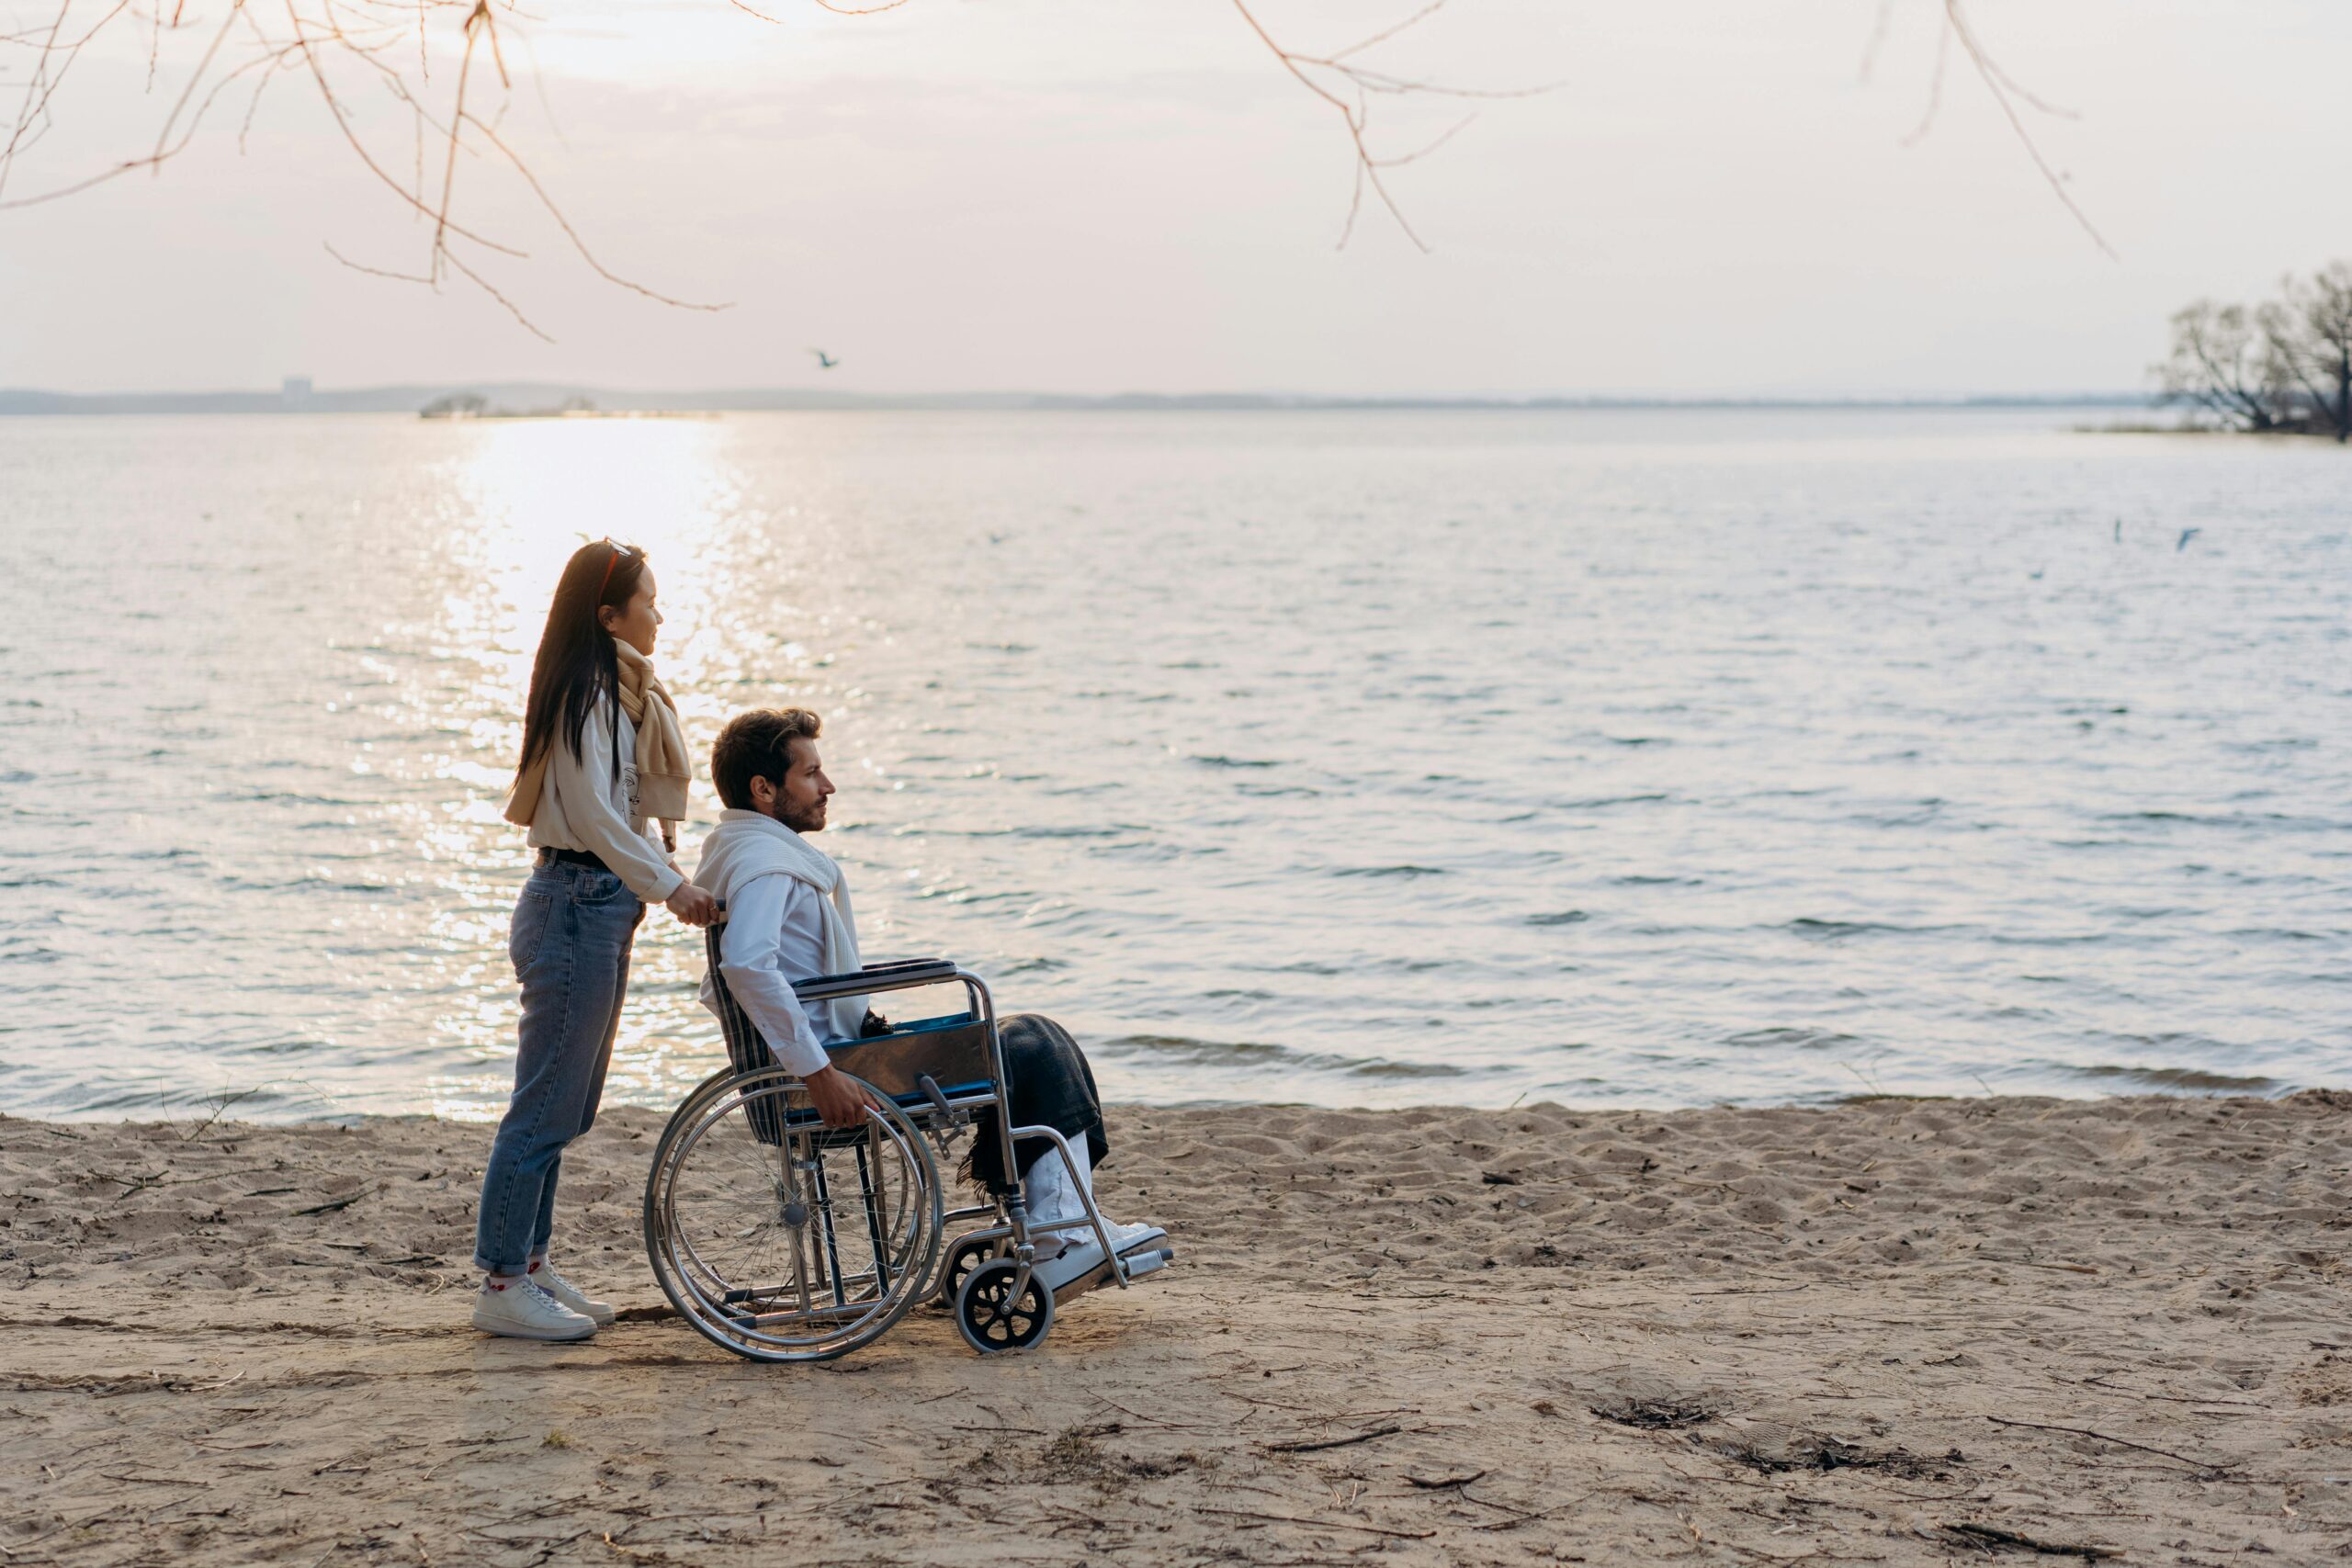 Slika prikazuje dvoje ljudi. Muškarac sjedi u kolicima dok je žena iza njega. Nalaze se na pješčanoj plaži uz more.